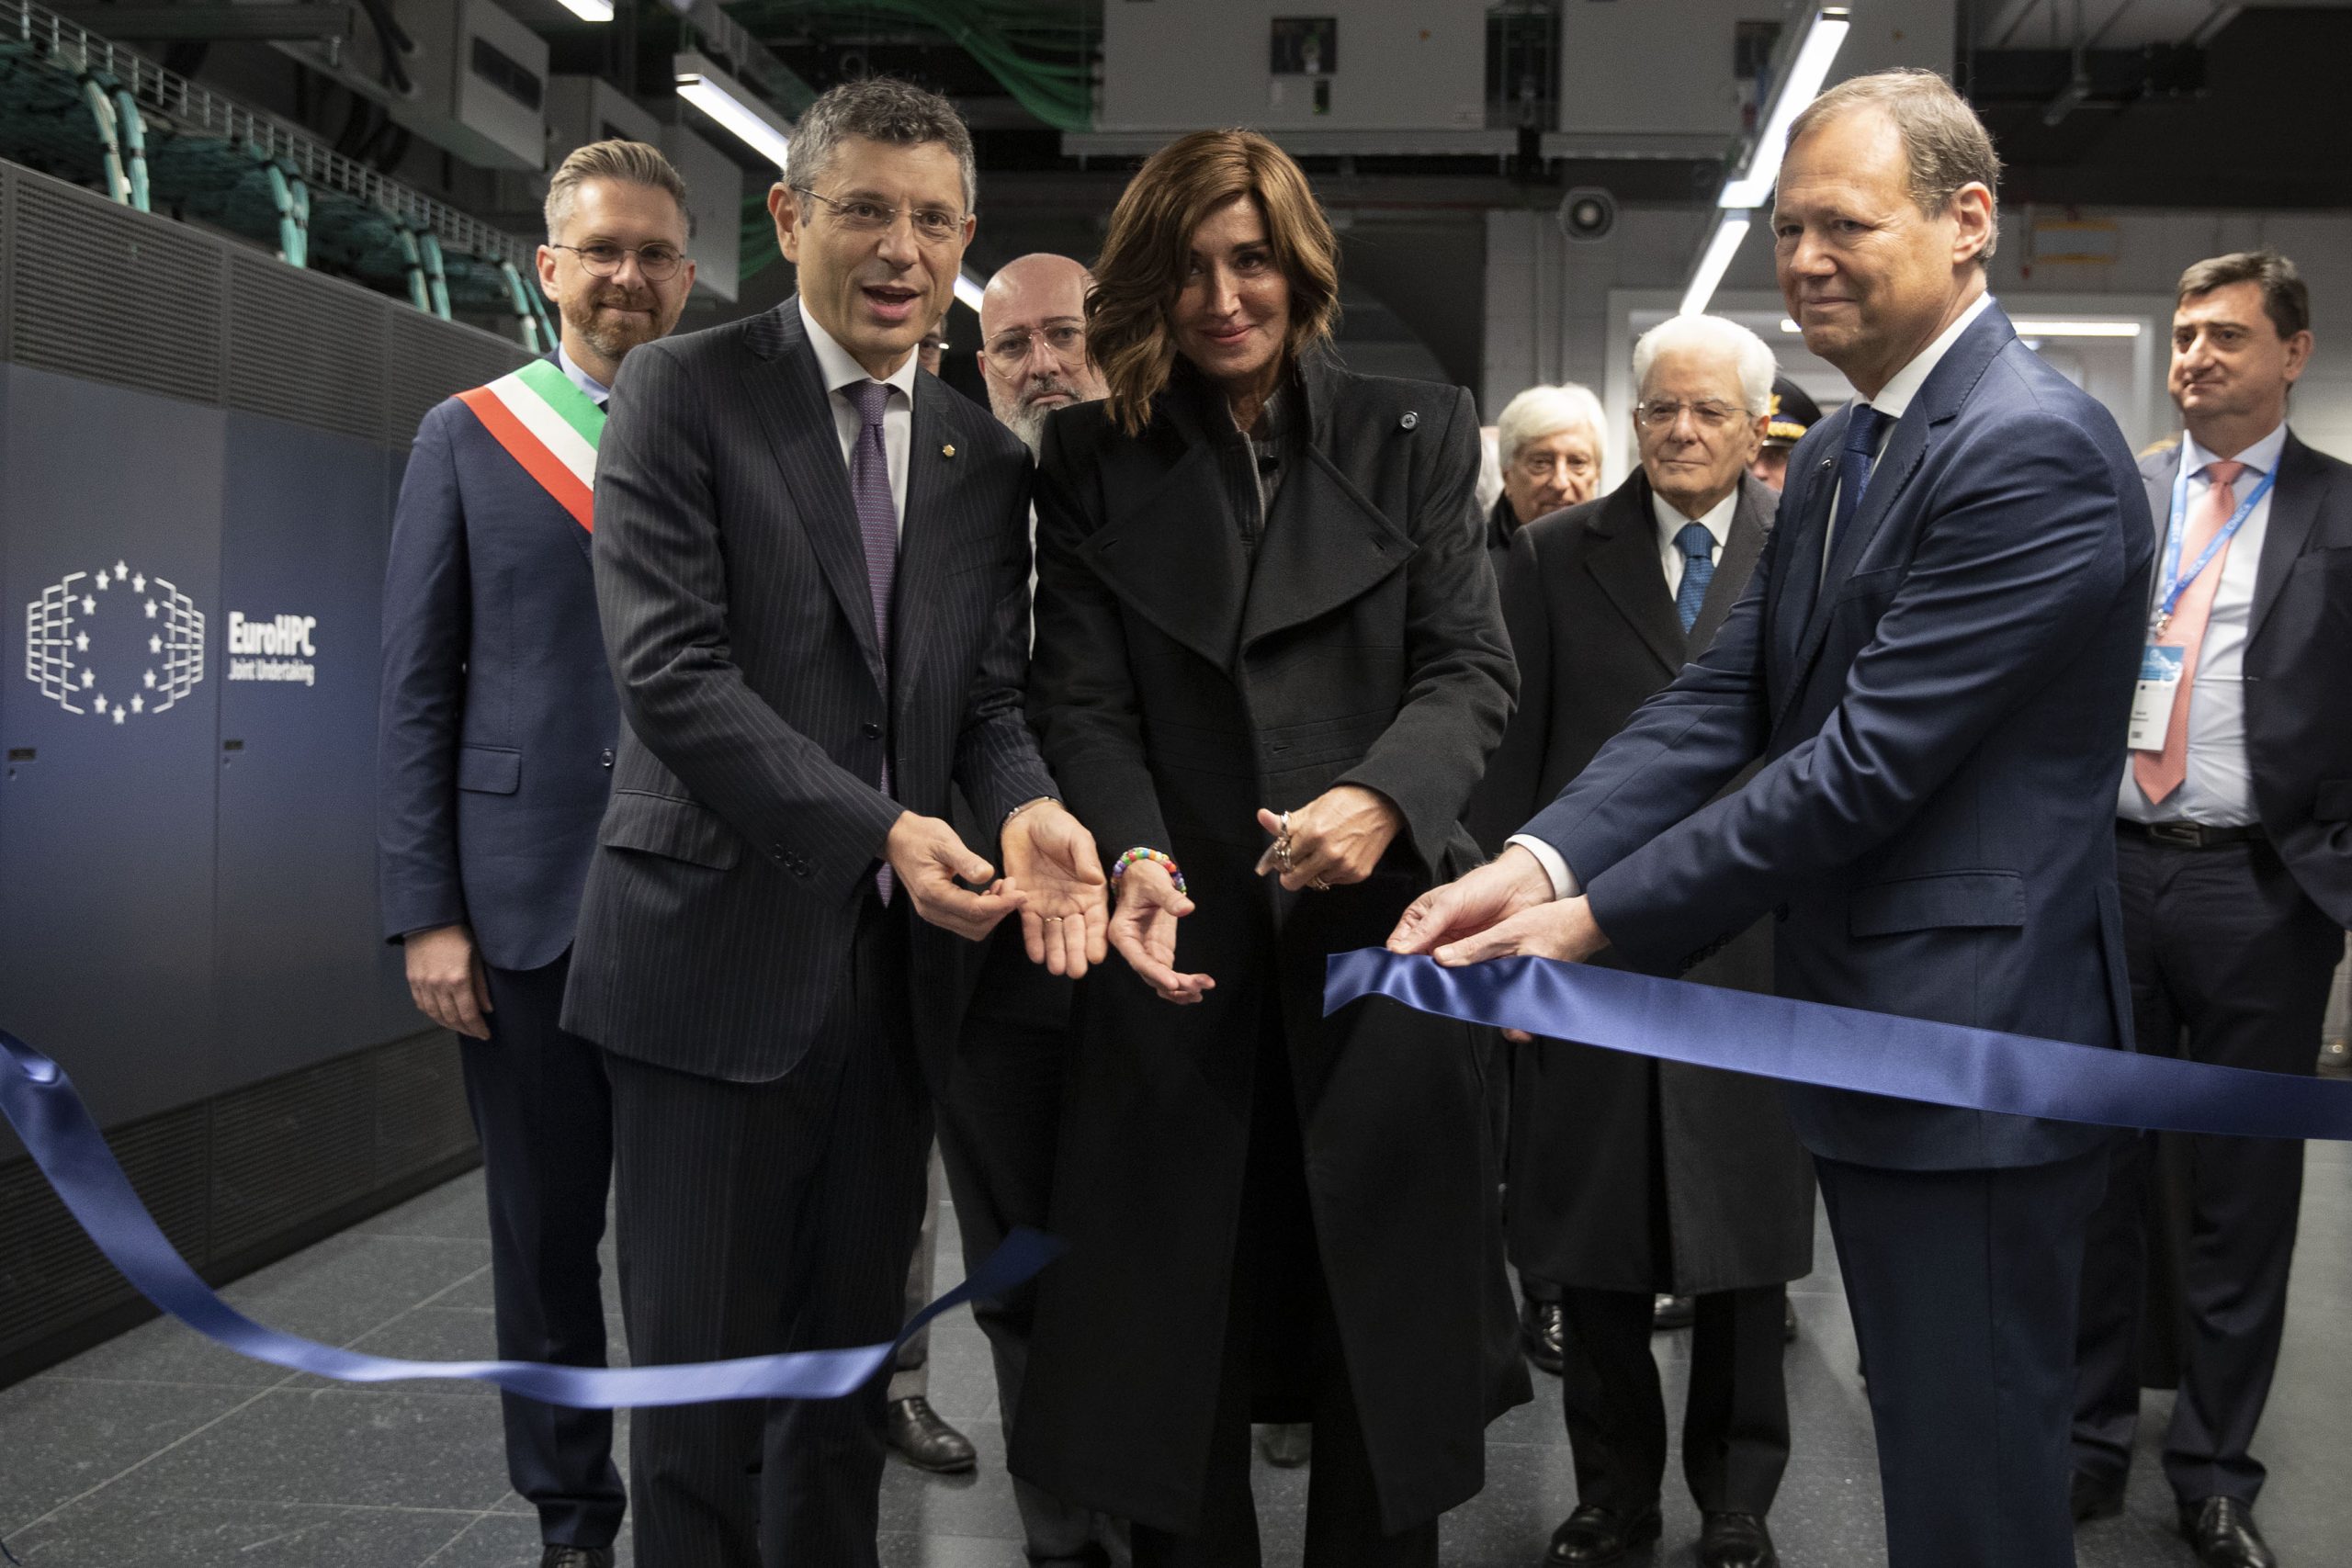 Alla presenza del capo dello Stato si accende il supercomputer Leonardo, il quarto più potente al mondo